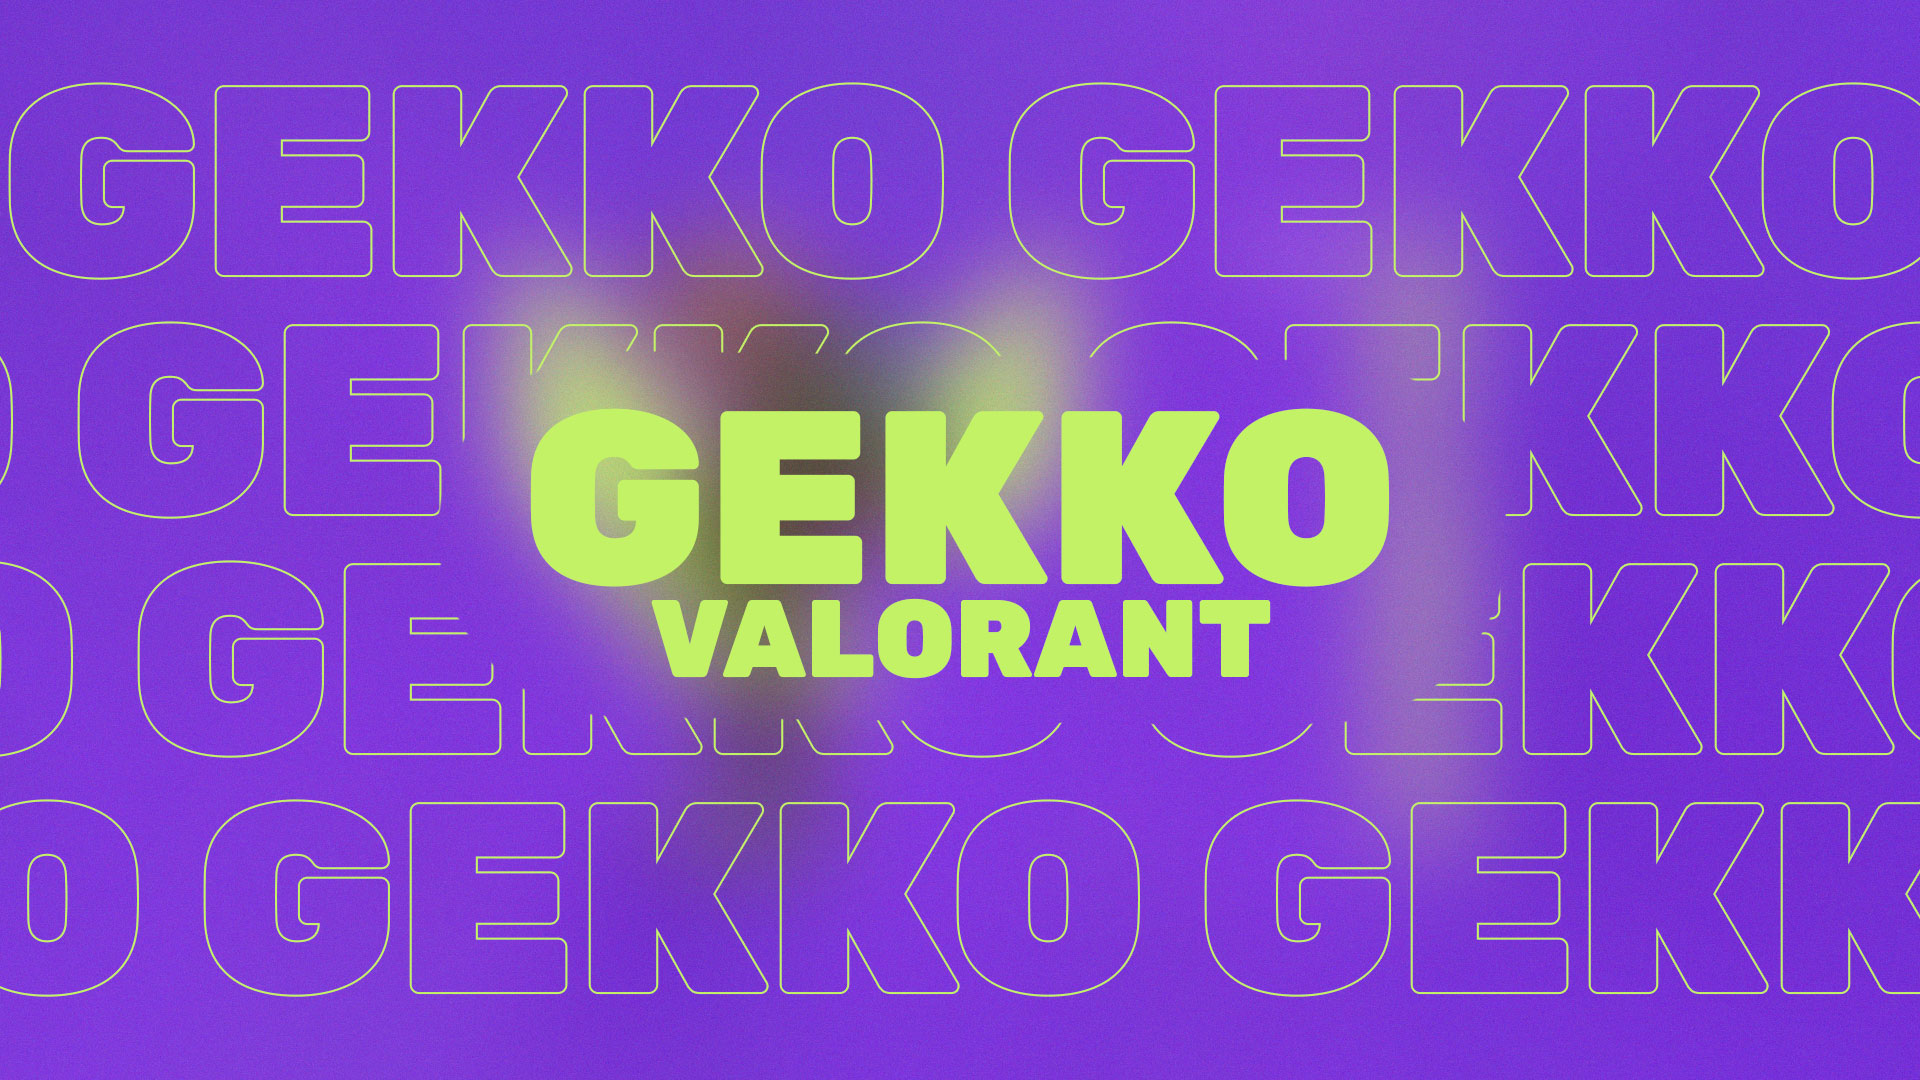 Встречайте нового, 22 агента в Valorant — Gekko. Он появится в игре вместе с началом 2 акта 6 эпизода.